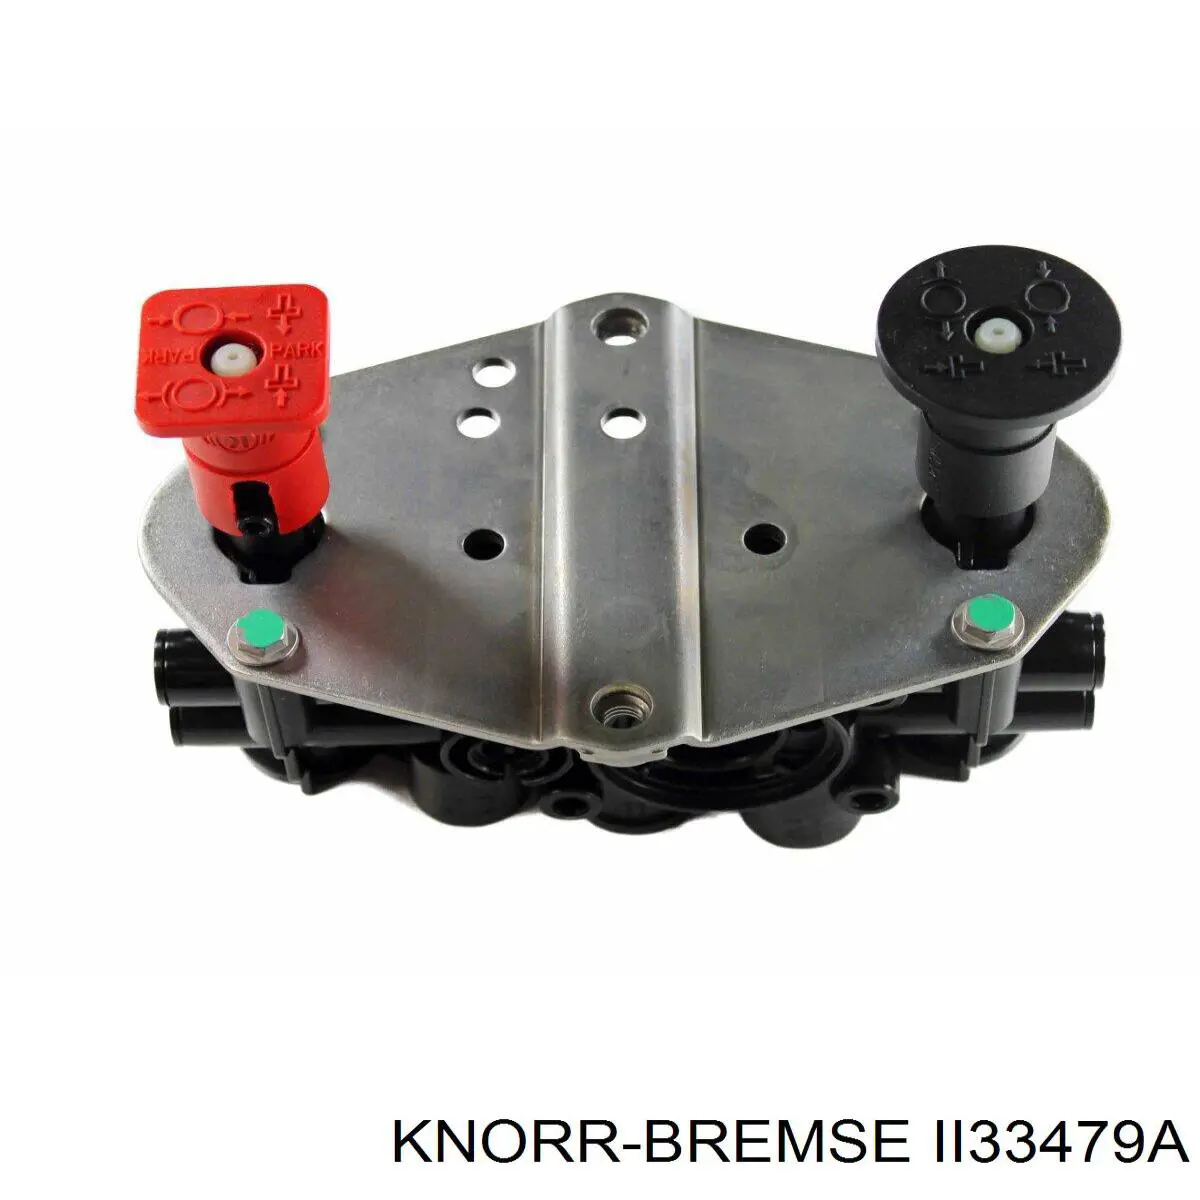 II33479A Knorr-bremse cilindro de freno de membrana